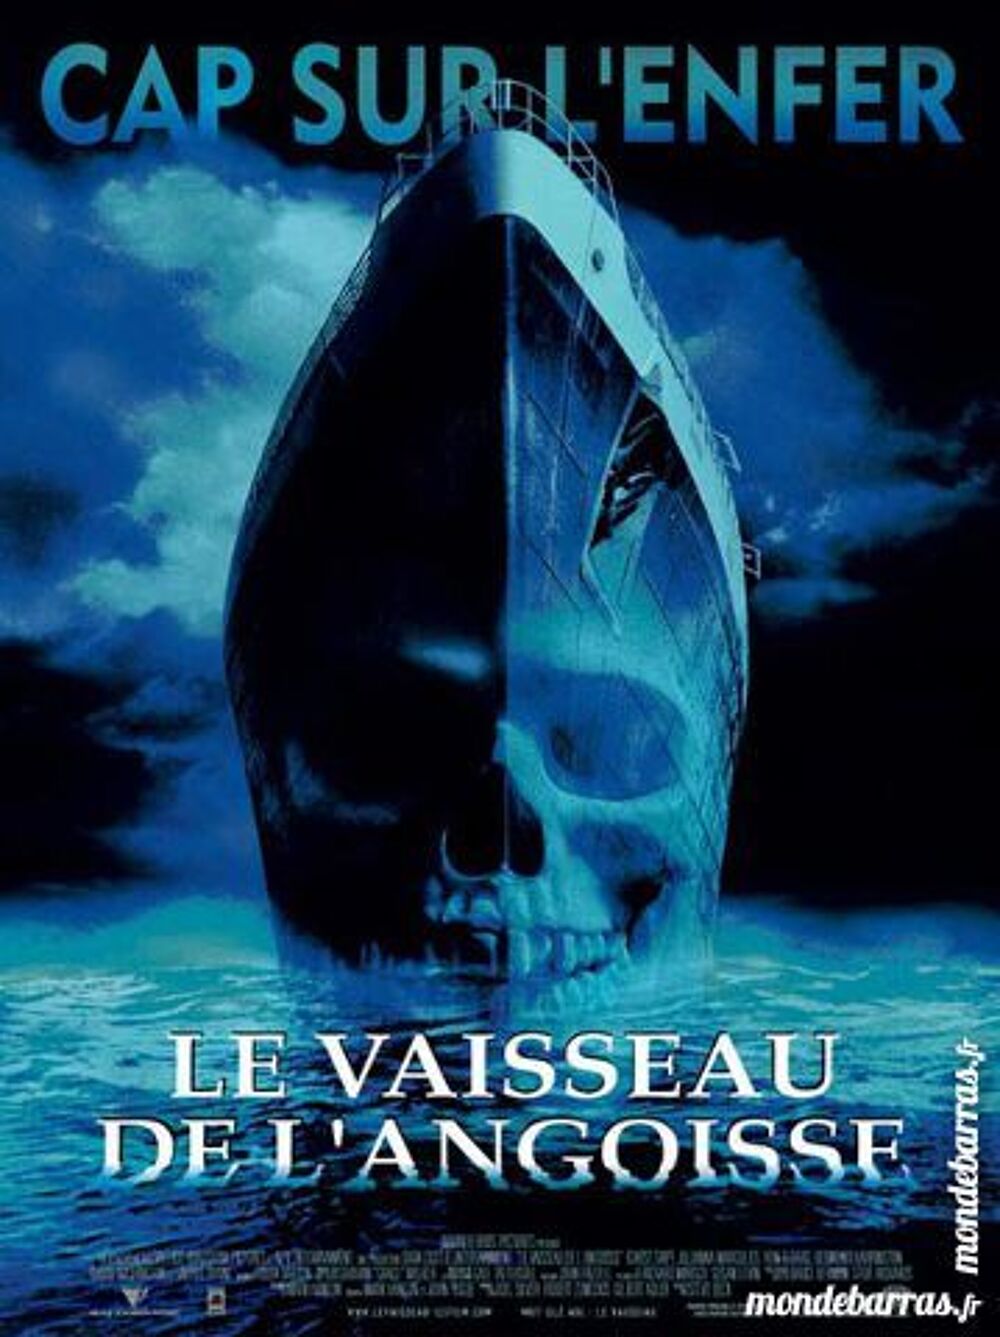 Dvd: Le Vaisseau de l'angoisse (466) DVD et blu-ray